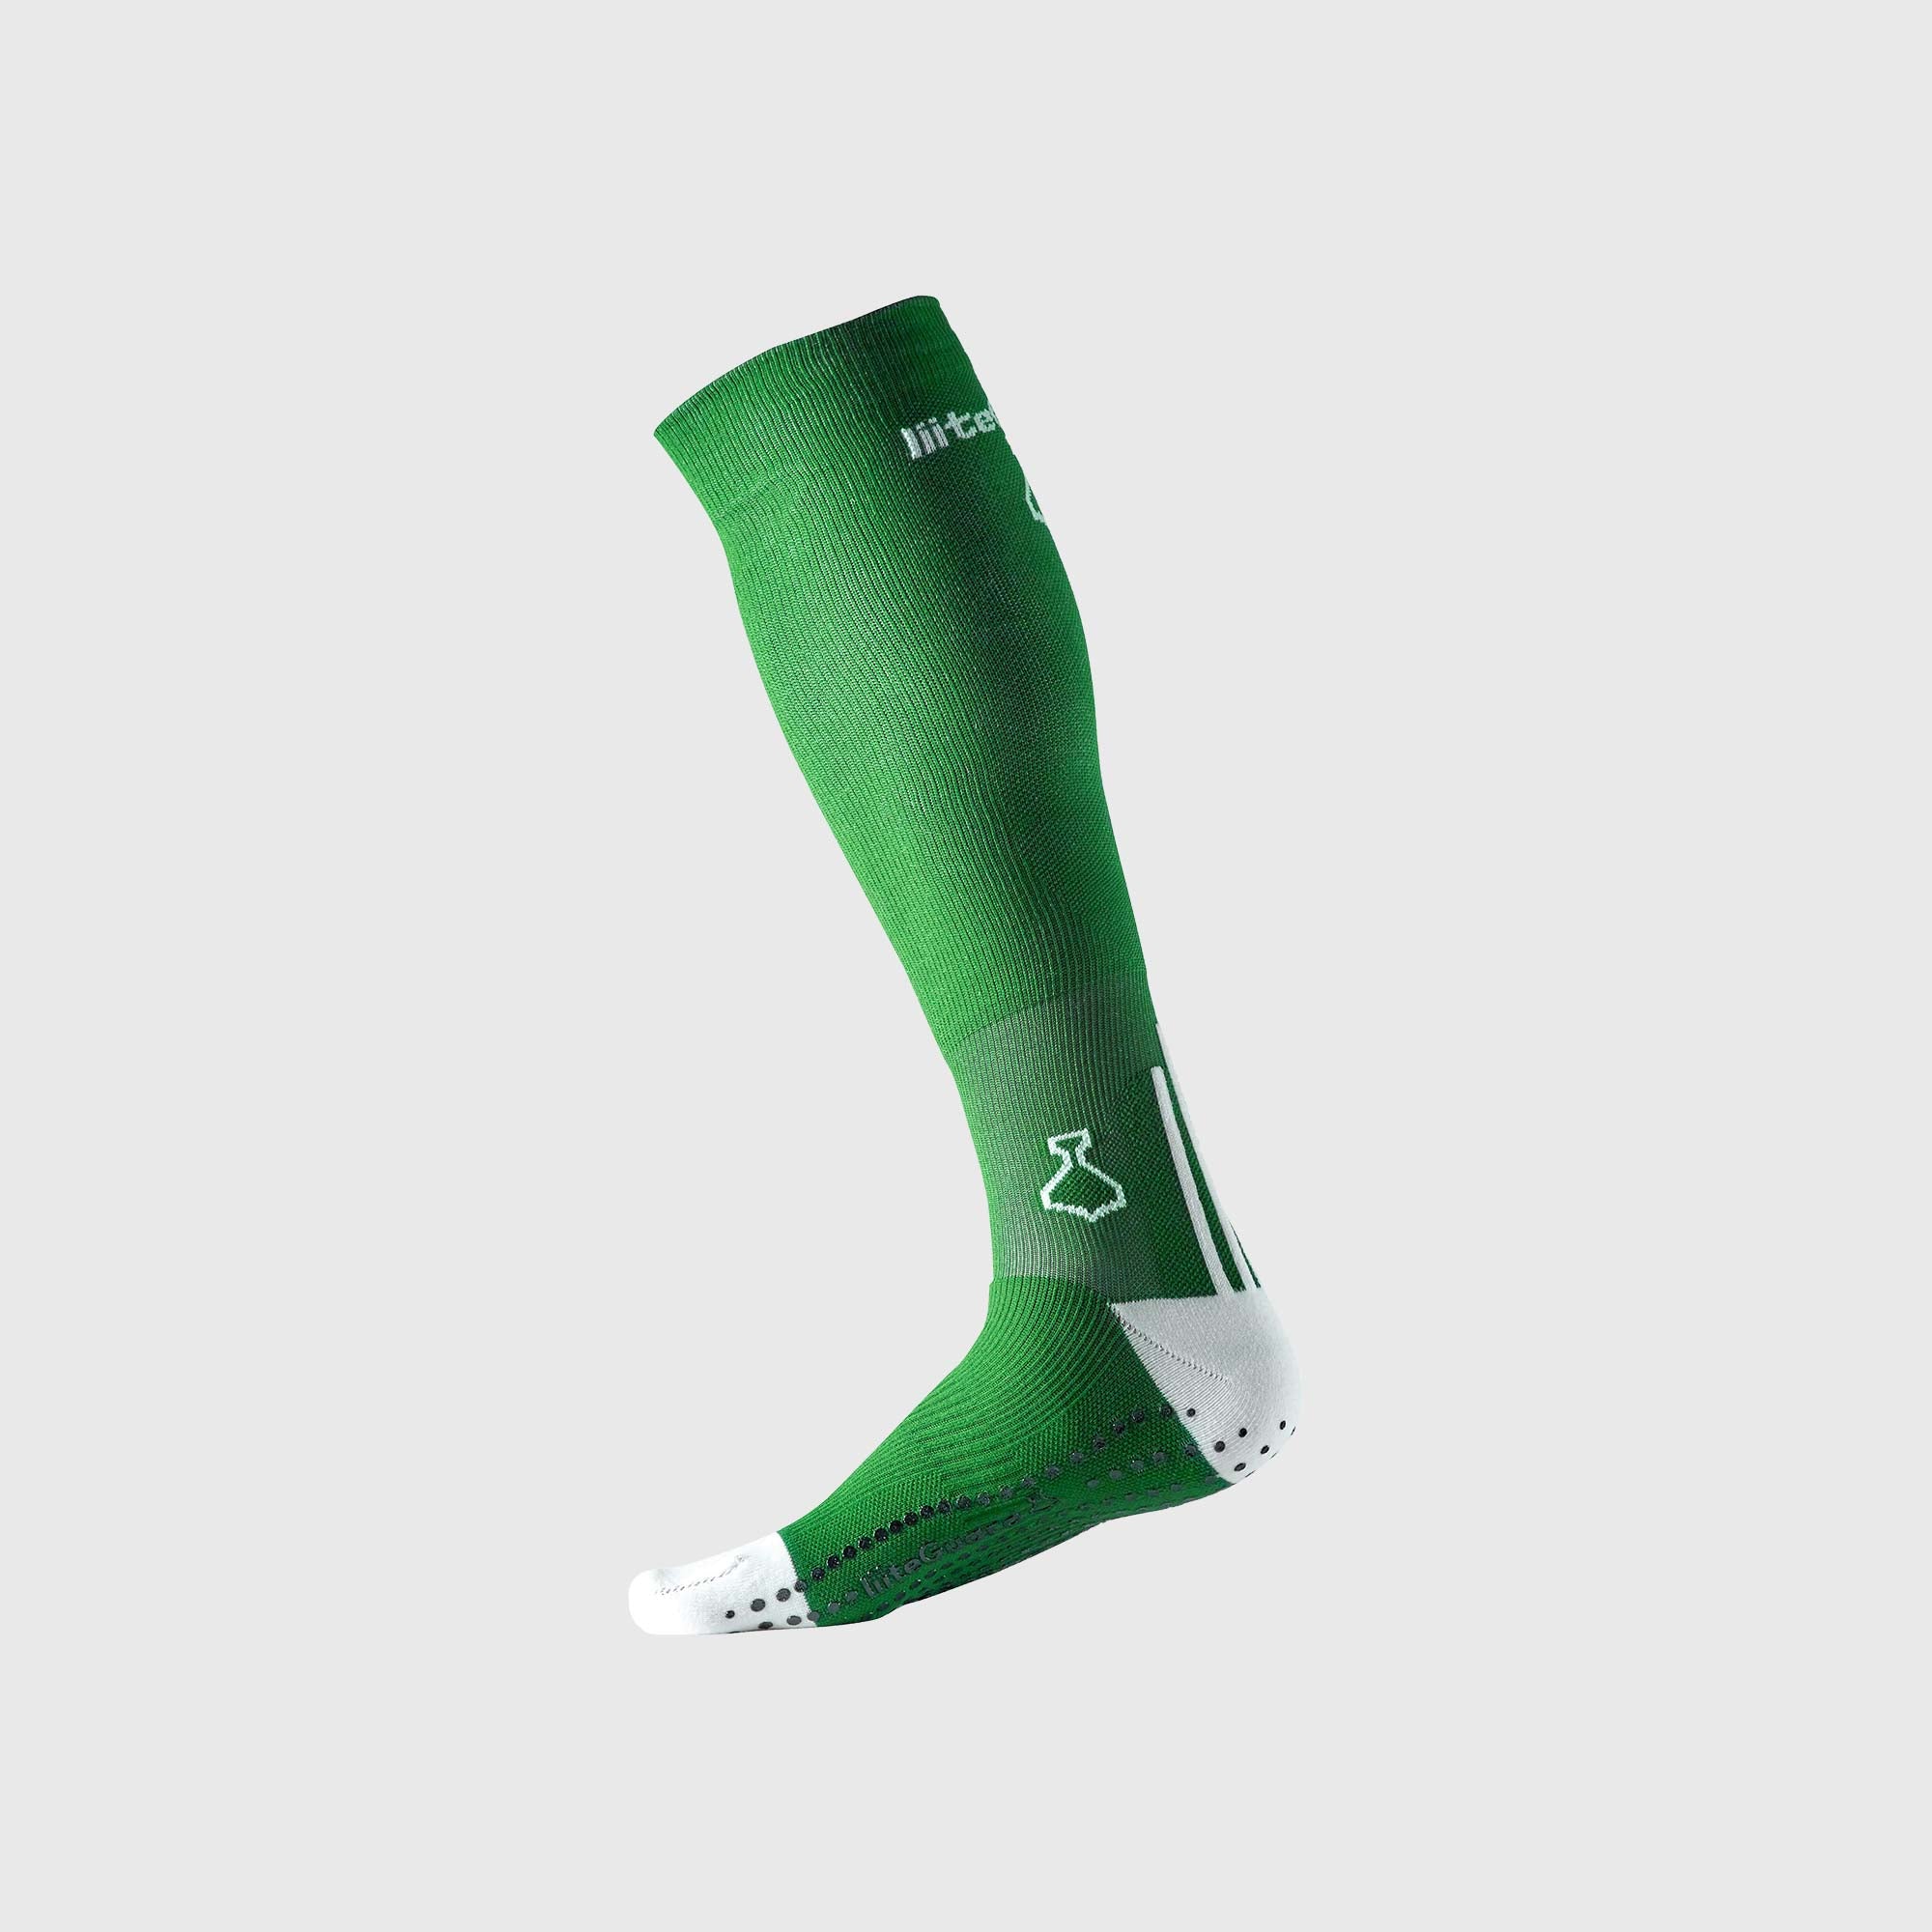 Billede af Fodboldstrømpe med kompression | Grøn | Str. 36-39 | Unisex liiteGuard - Giv dig selv en fordel på fodboldbanen.